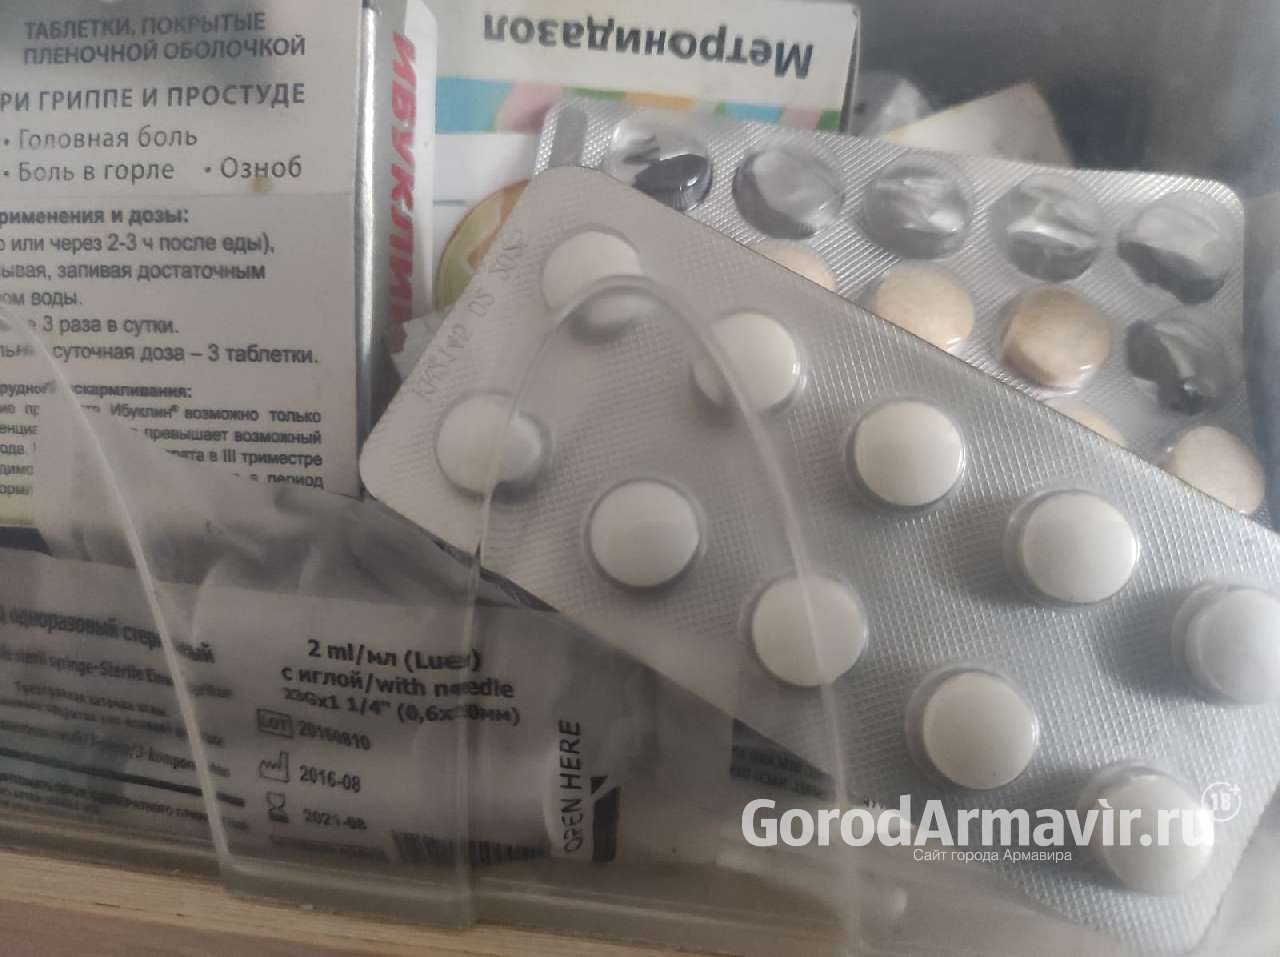 В Армавире 15 жителей за сутки заразились коронавирусной инфекцией 